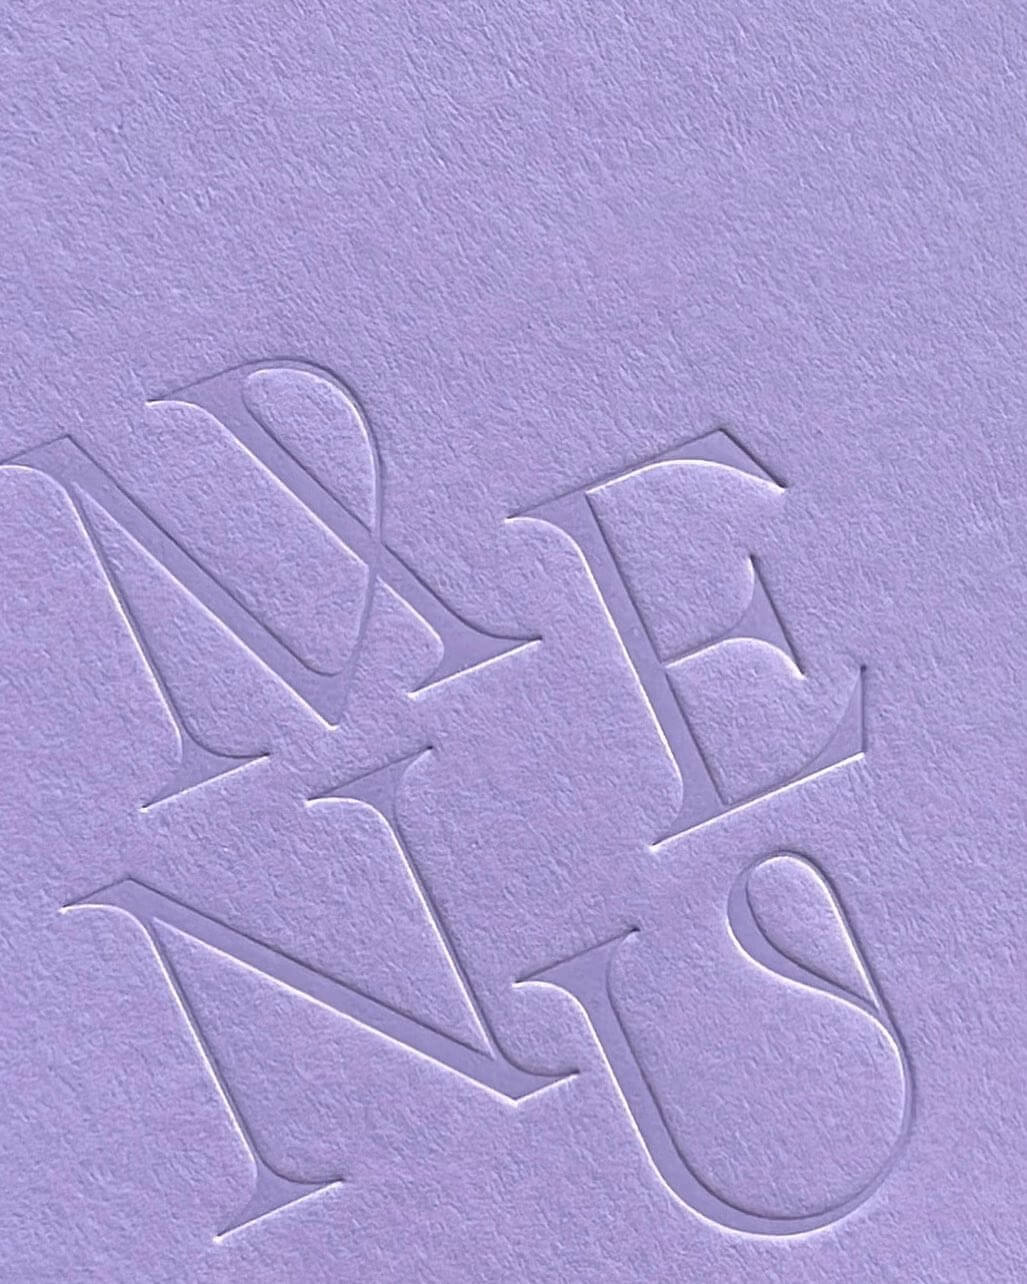 smitten with ink letterpress on purple